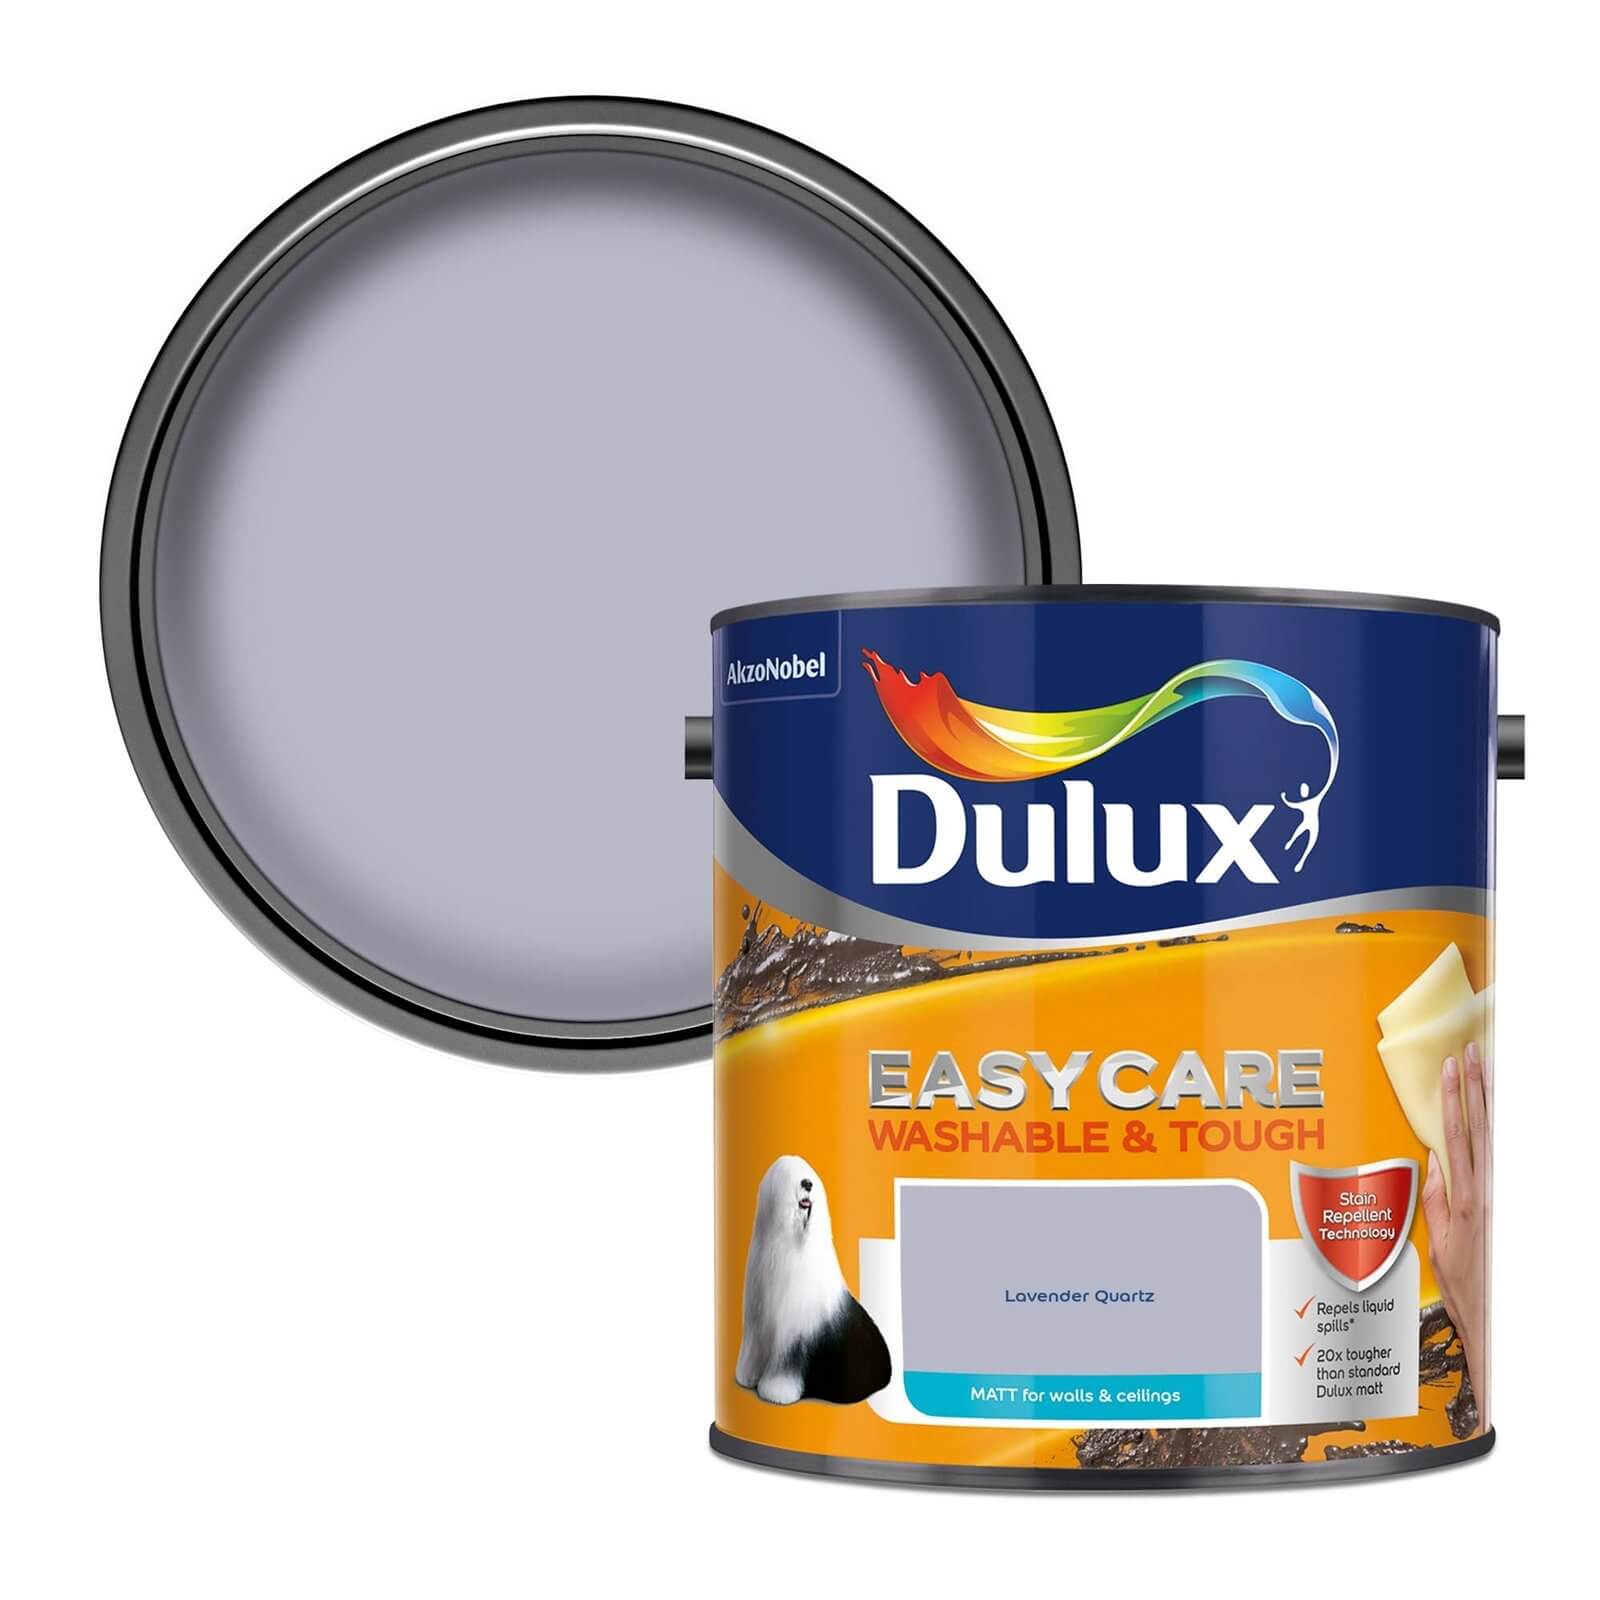 Dulux Easycare Washable & Tough Lavender Quartz Matt Paint - 2.5L